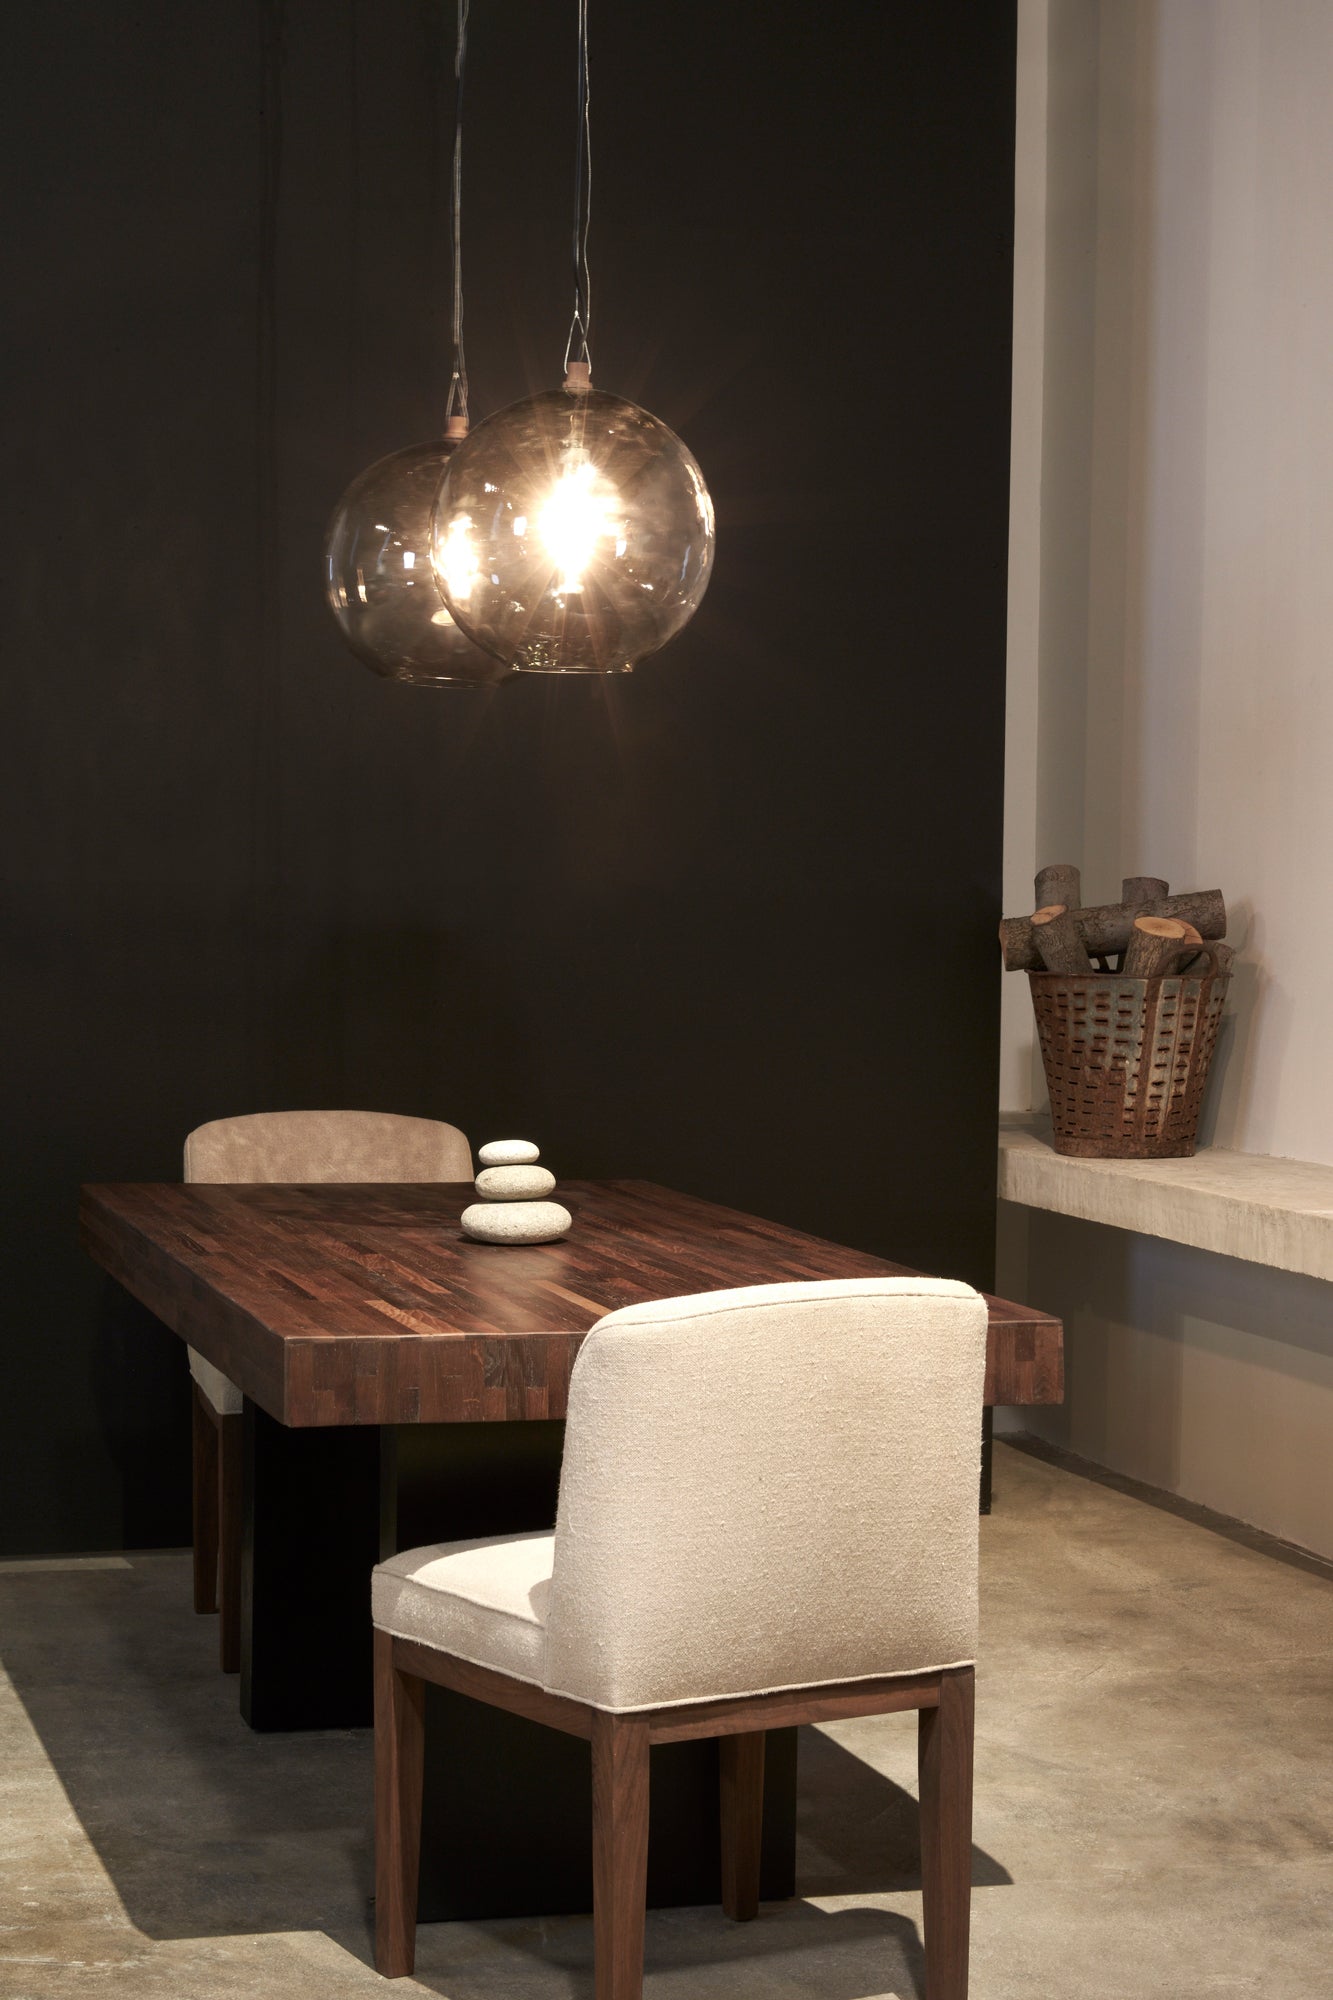  餐厅配有木制餐桌, 两把白色织物的软垫椅子和两个球形吊坠悬挂在餐桌上方.  